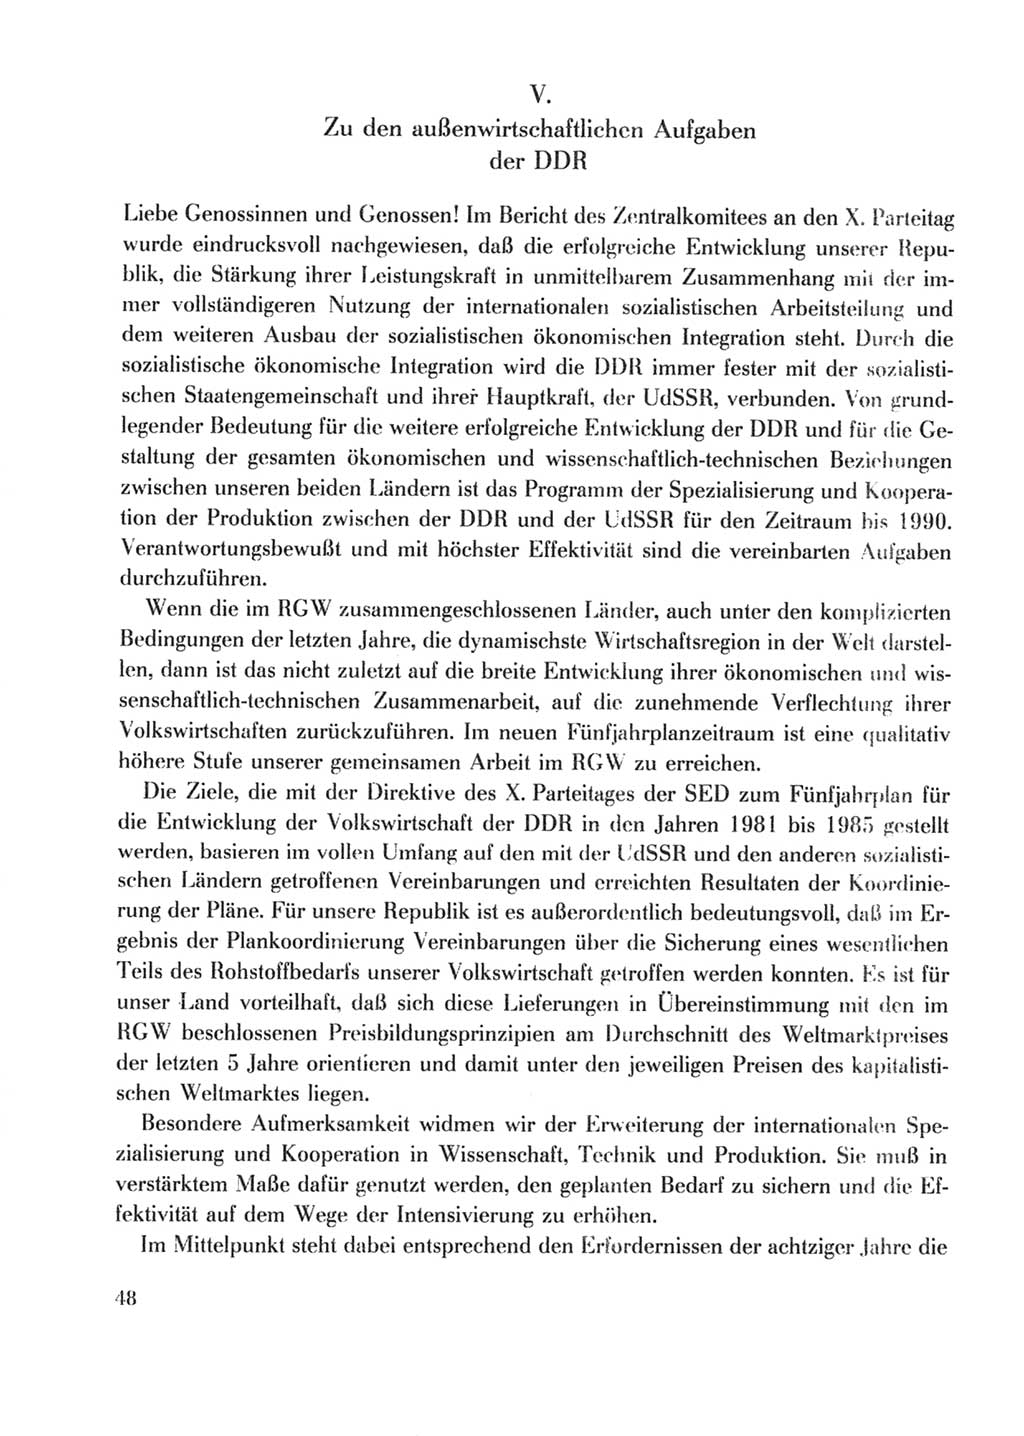 Protokoll der Verhandlungen des Ⅹ. Parteitages der Sozialistischen Einheitspartei Deutschlands (SED) [Deutsche Demokratische Republik (DDR)] 1981, Band 2, Seite 48 (Prot. Verh. Ⅹ. PT SED DDR 1981, Bd. 2, S. 48)